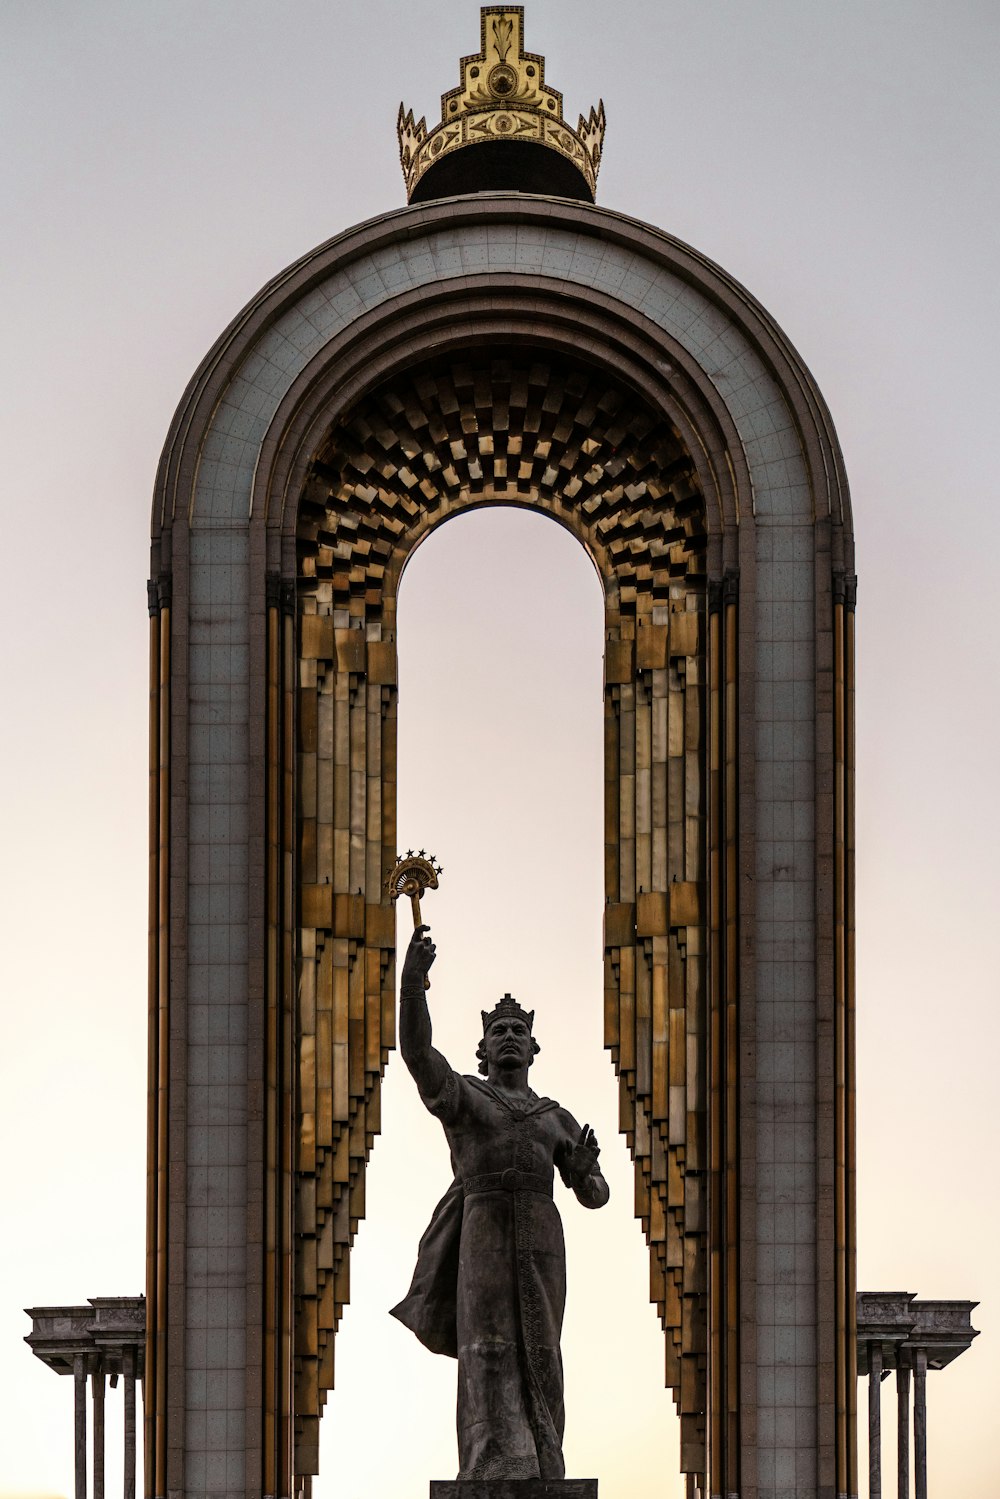 une statue d’une personne tenant une torche devant une grande arche de pierre